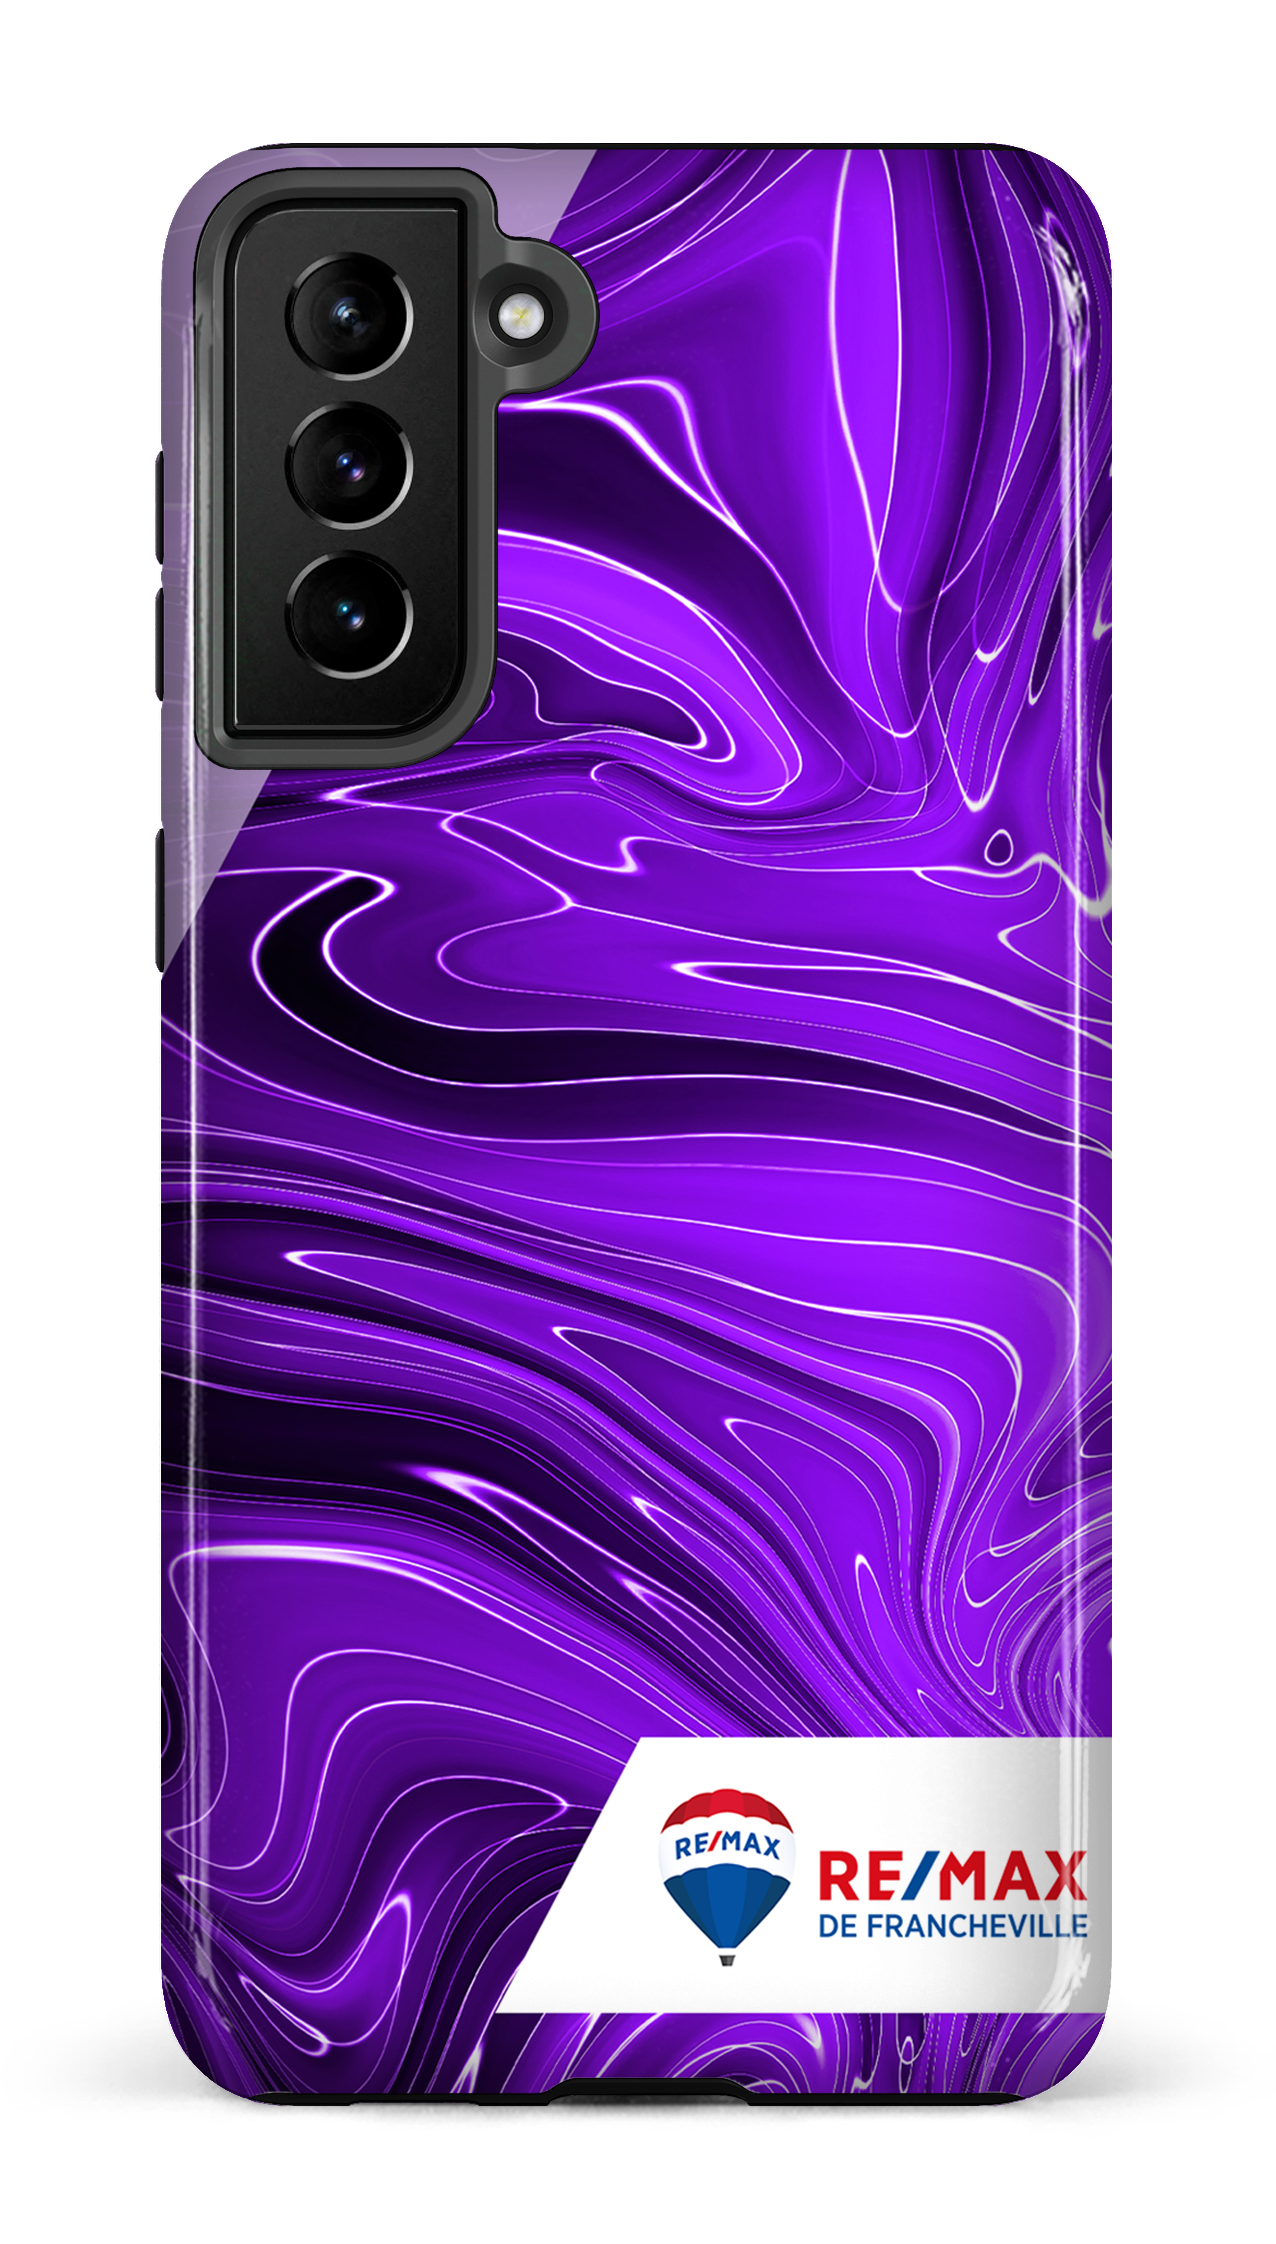 Peinture marbrée sombre violette de Francheville - Galaxy S21 Plus